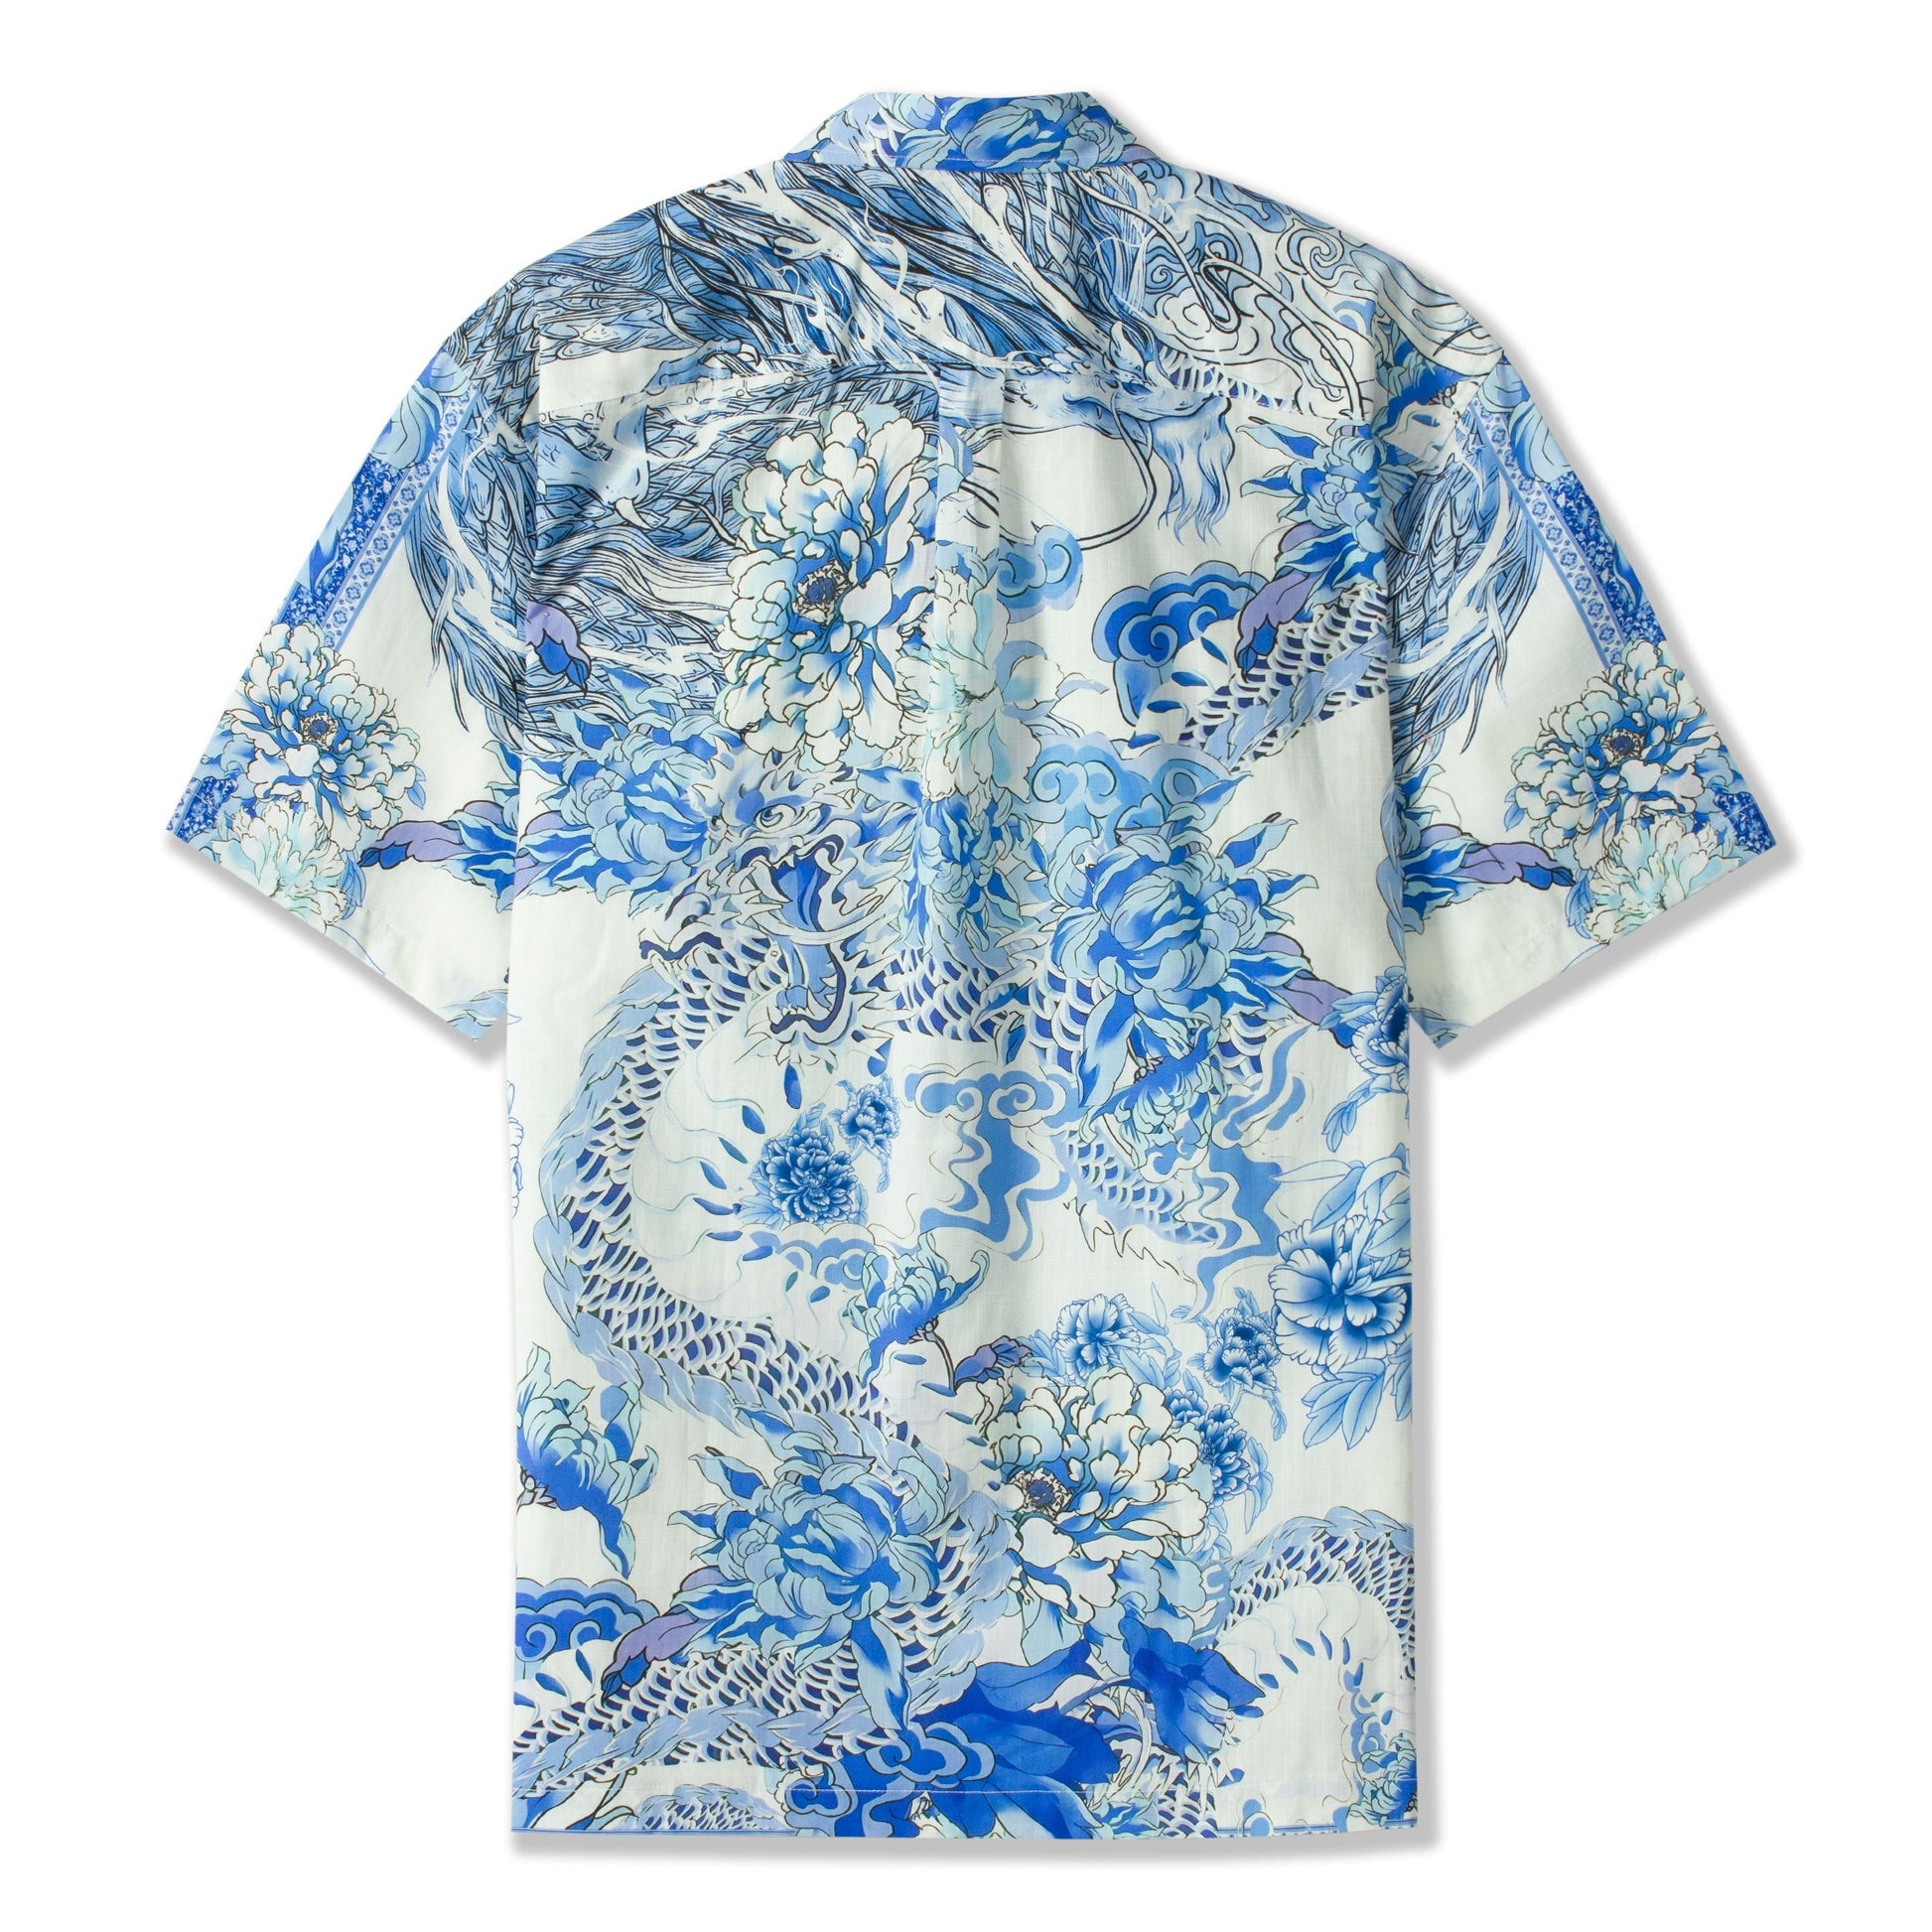 Exotic Dragon Print Short Sleeve Shirt for Men Jonvidesign